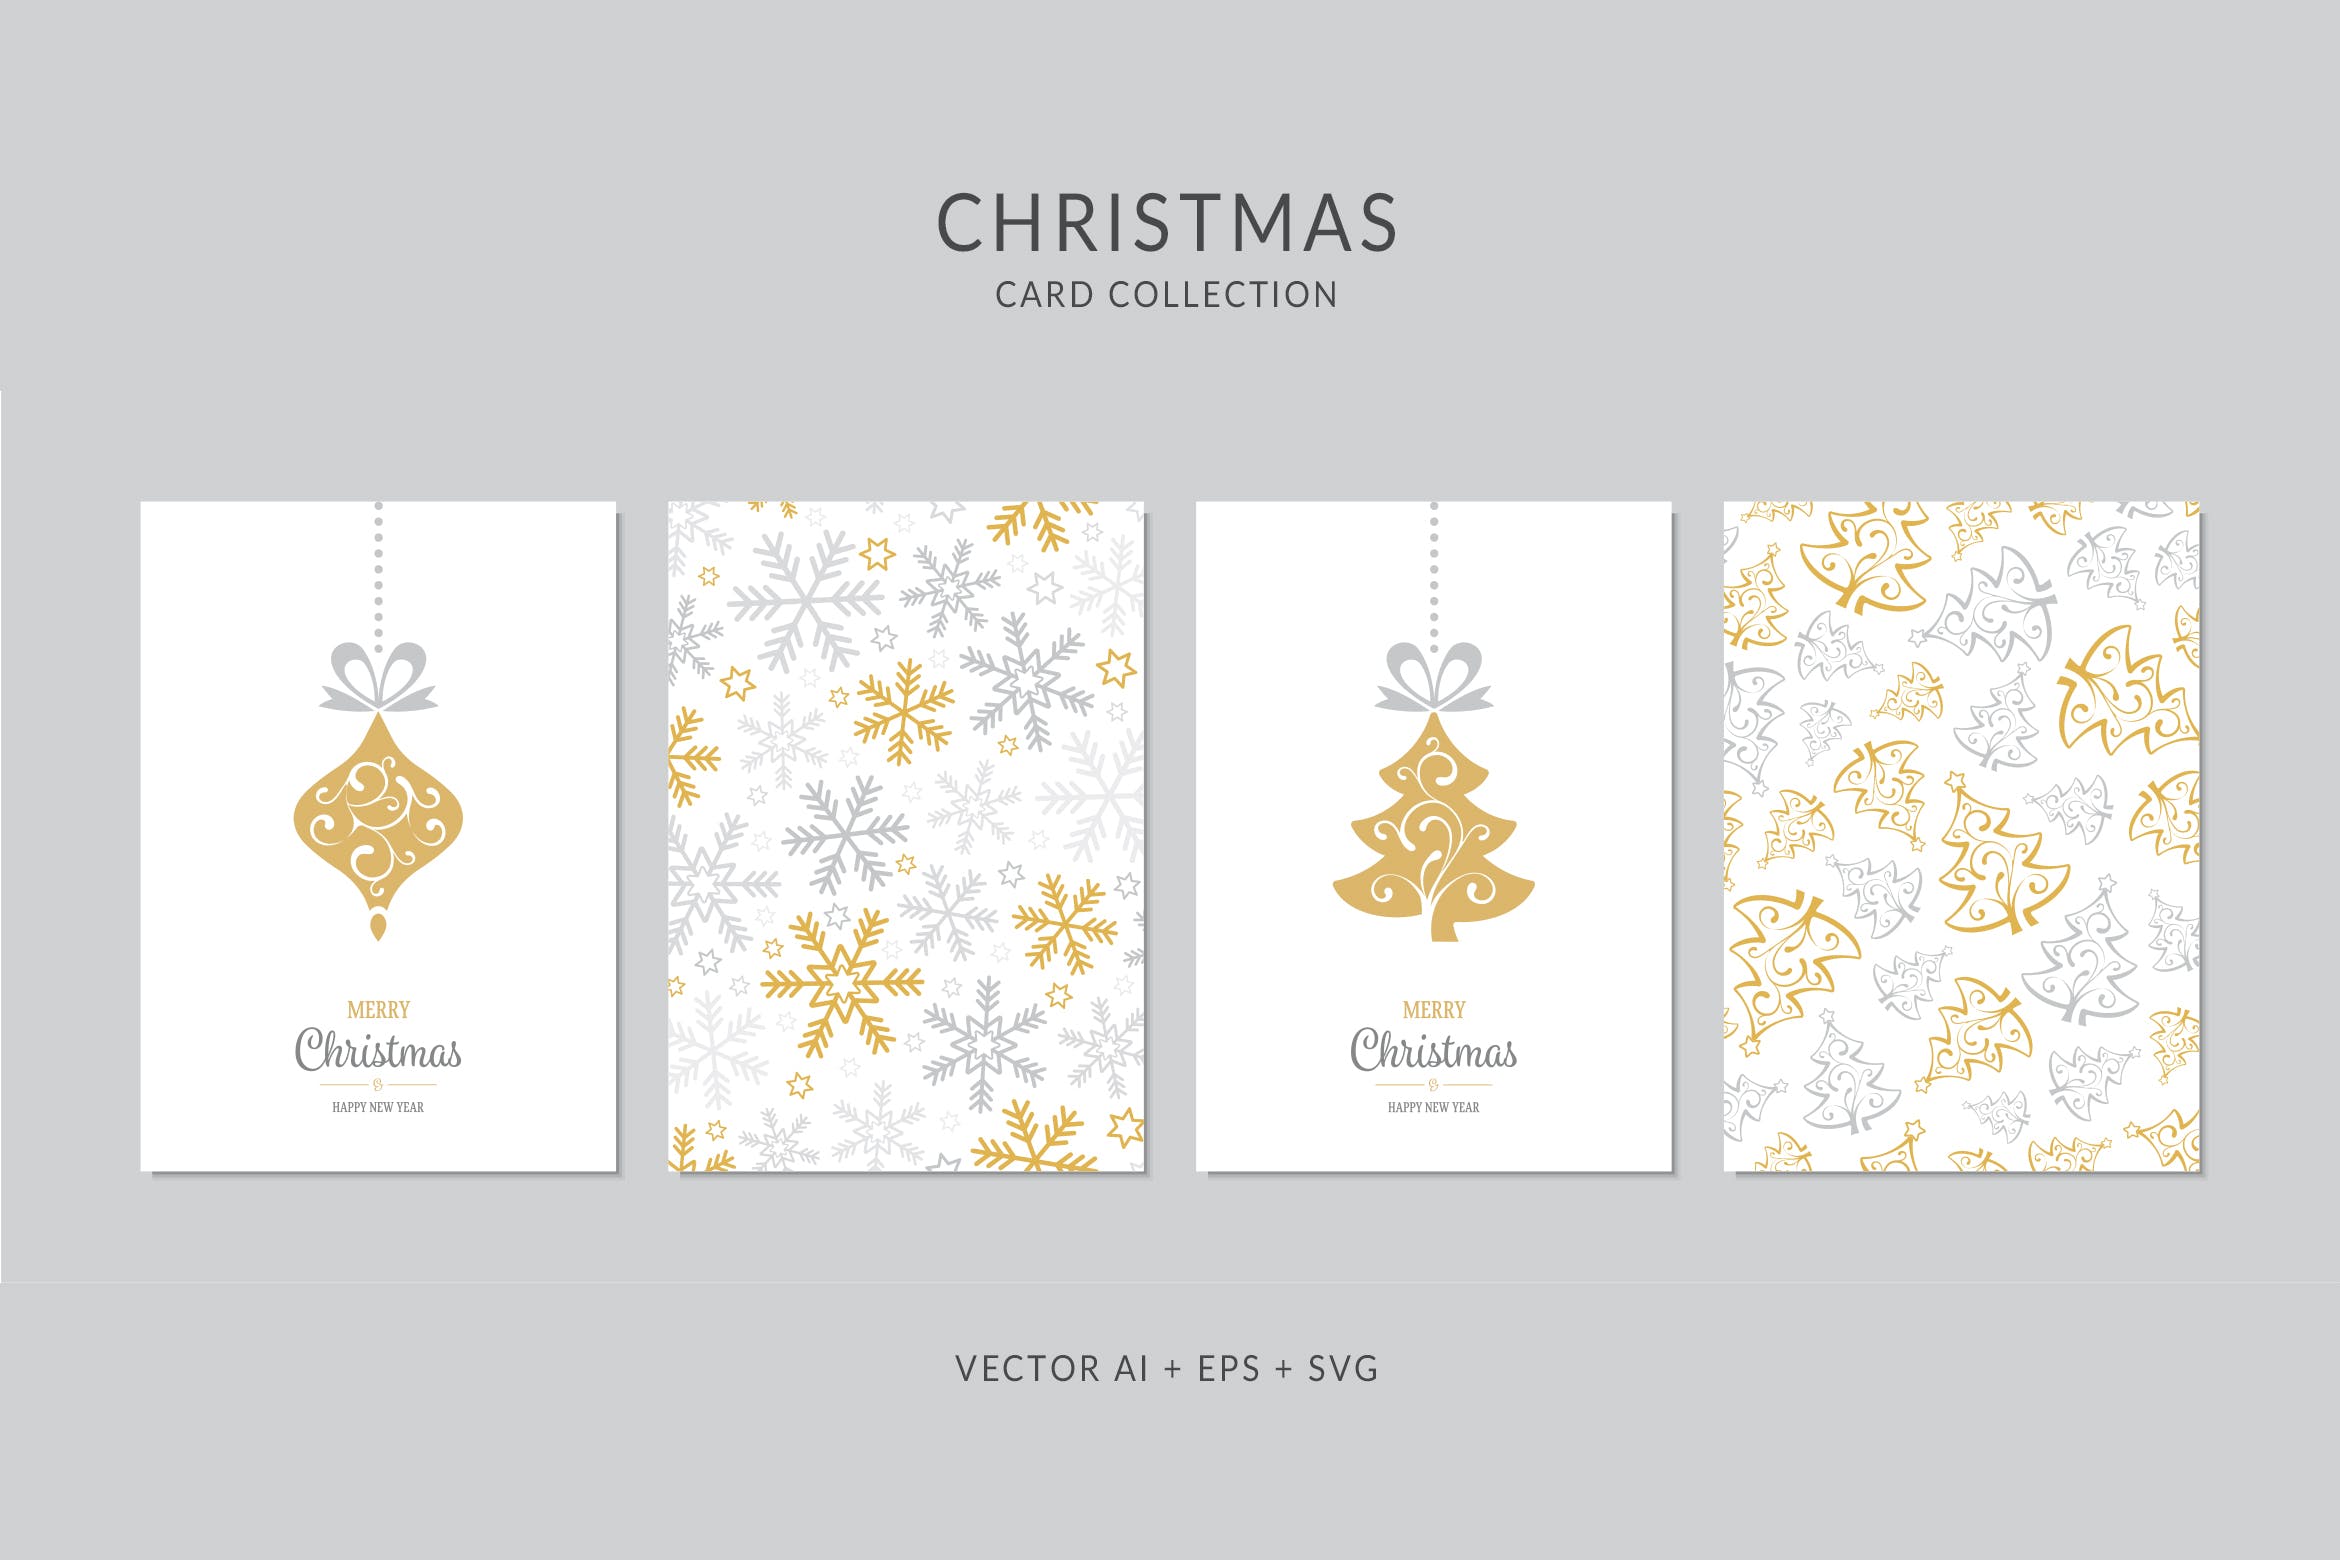 圣诞树/雪花/圣诞装饰元素圣诞节贺卡矢量设计模板 Christmas Greeting Card Vector Set插图